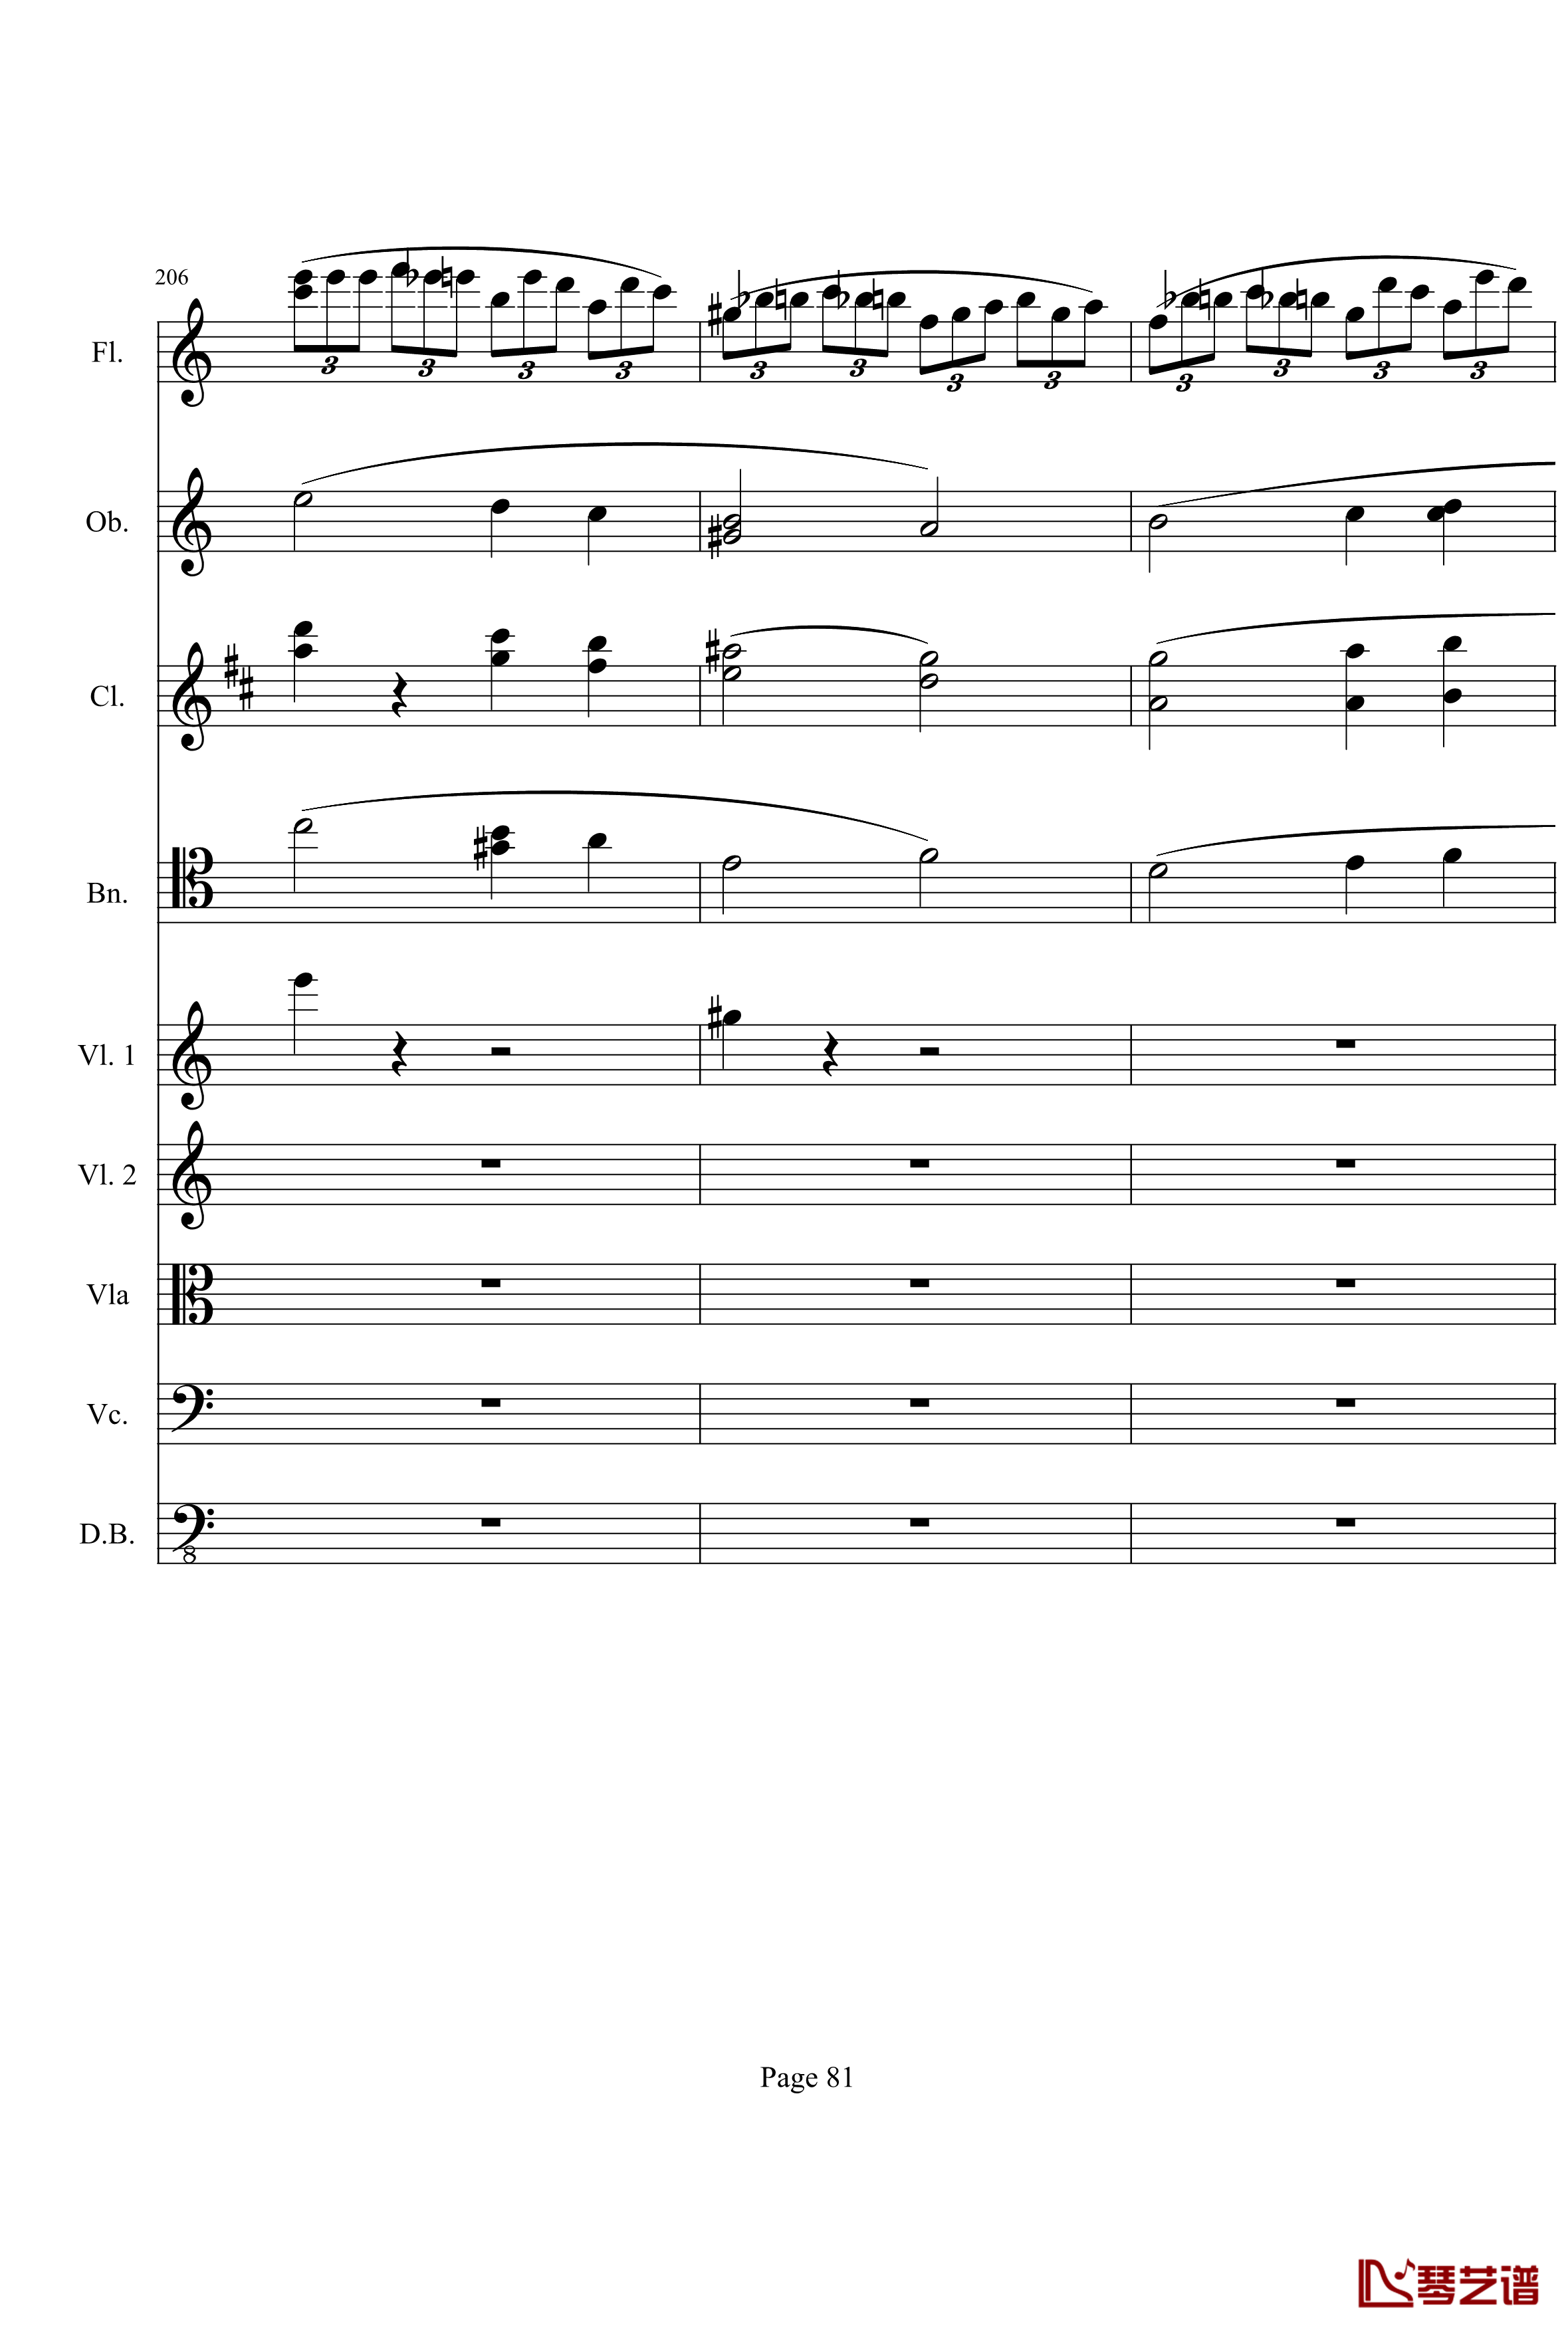 奏鸣曲之交响钢琴谱-第21-Ⅰ-贝多芬-beethoven81